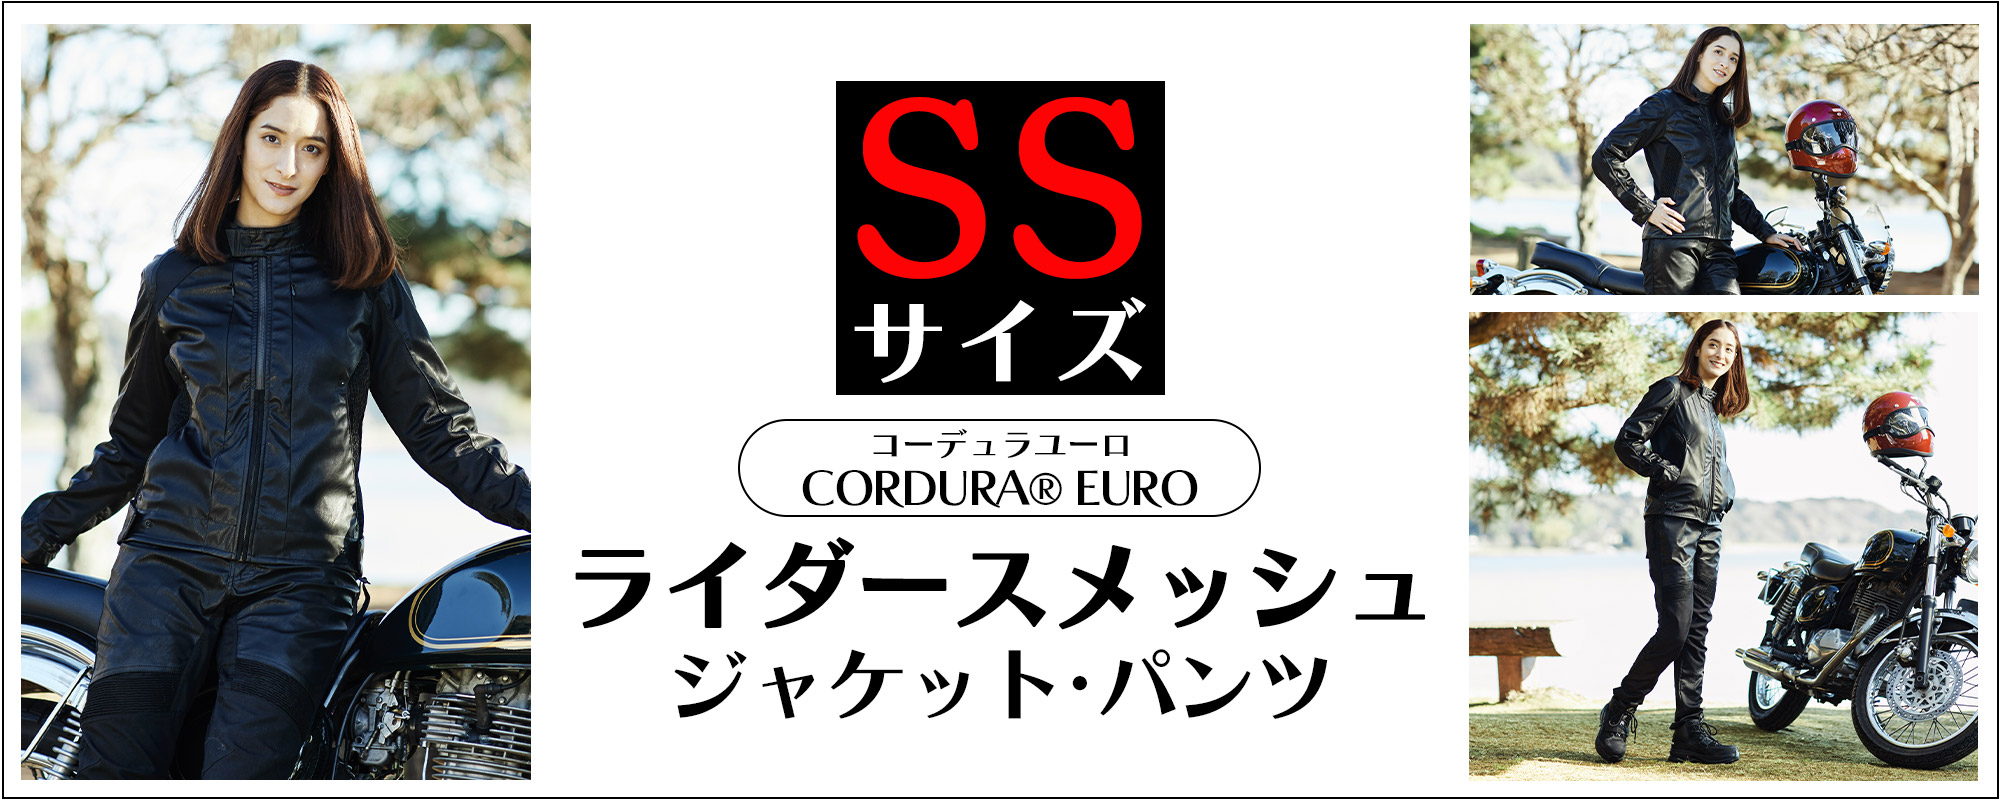 CORDURA(R)EURO(コーデュラユーロ)ライダースメッシュ SSサイズ